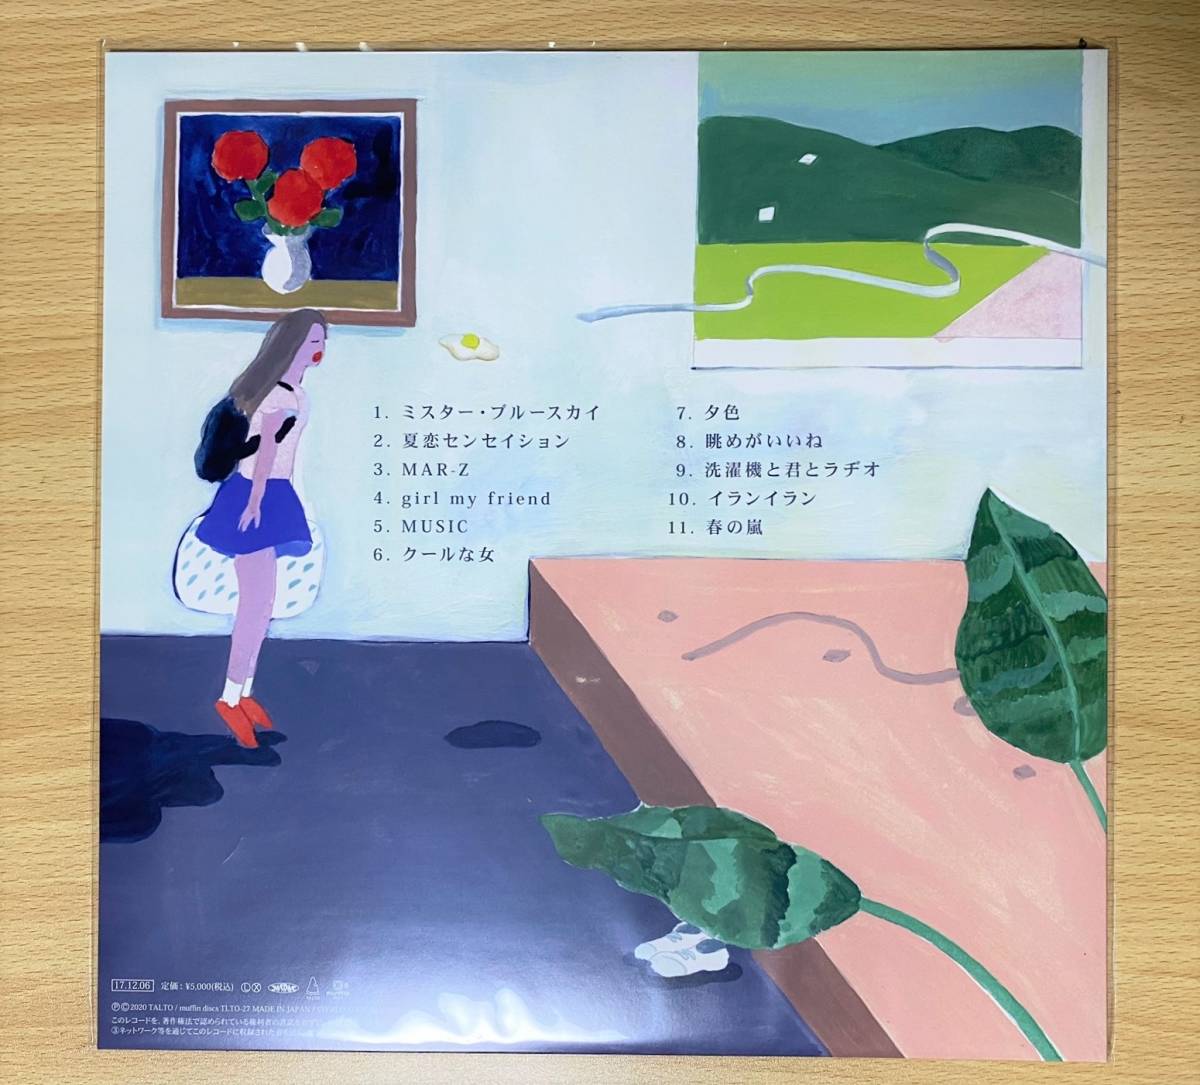 マカロニえんぴつ CHOSYOKU 12インチレコード 完全生産限定 アナログ盤 レコード マカえん 限定盤